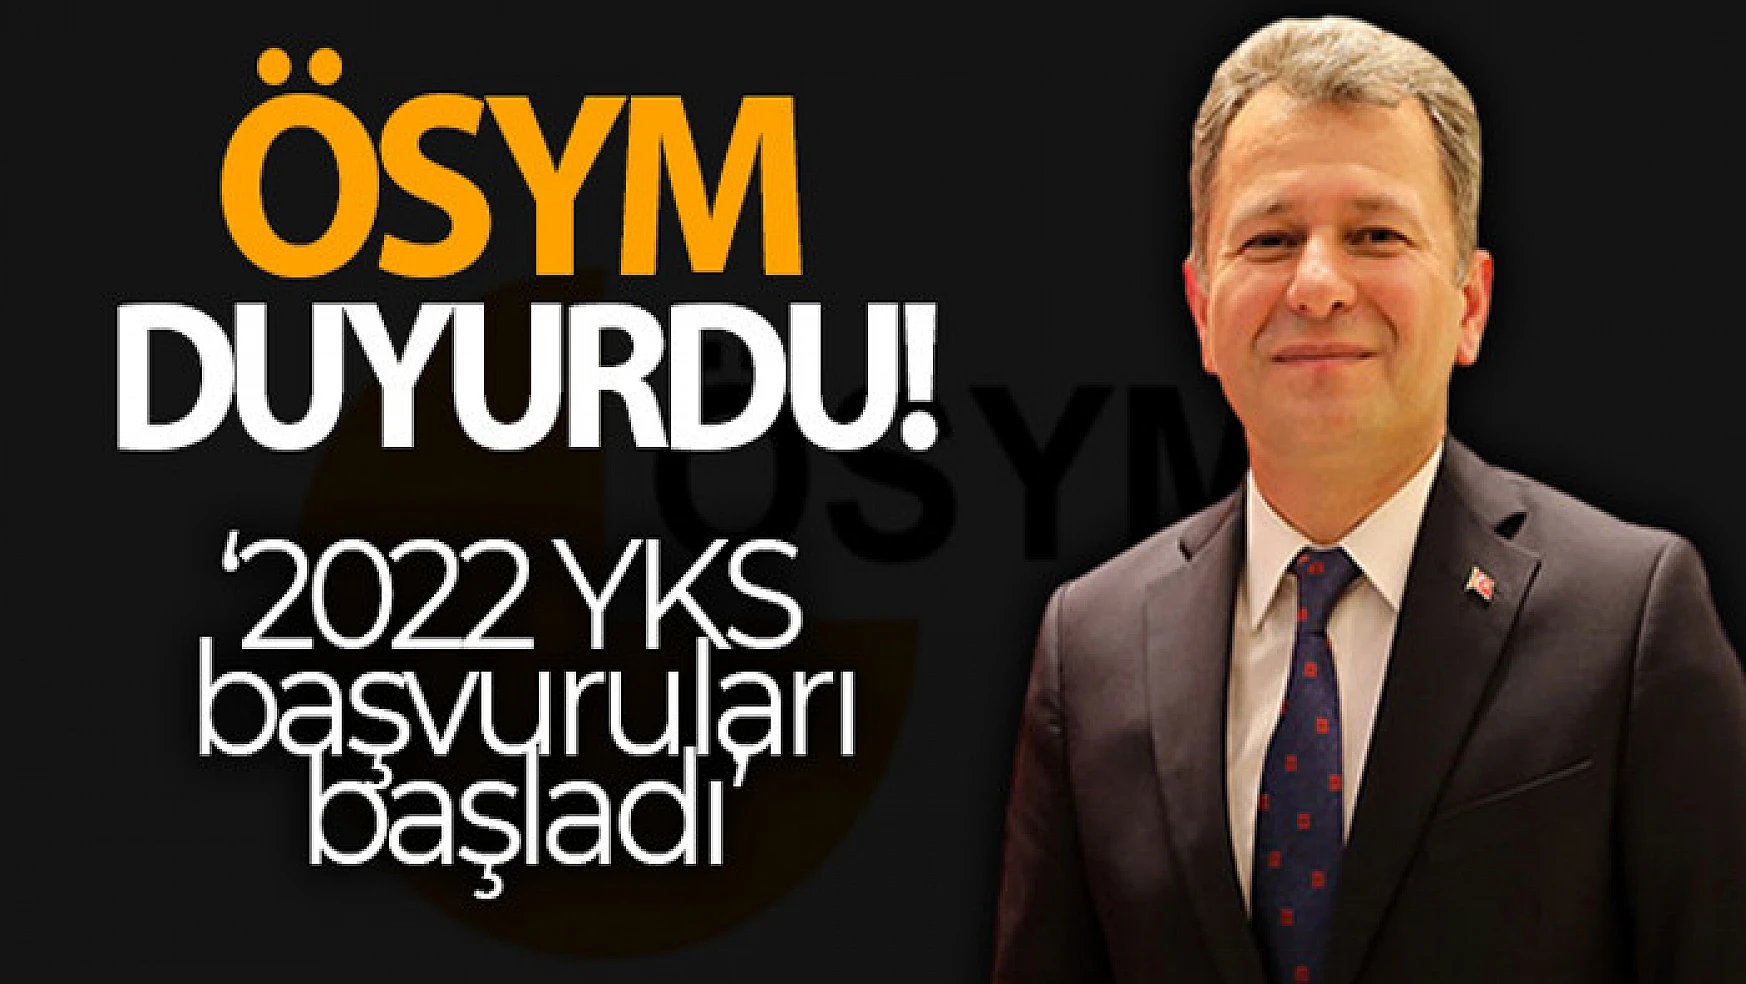 ÖSYM Başkanı Aygün: '2022 YKS başvuruları başladı'